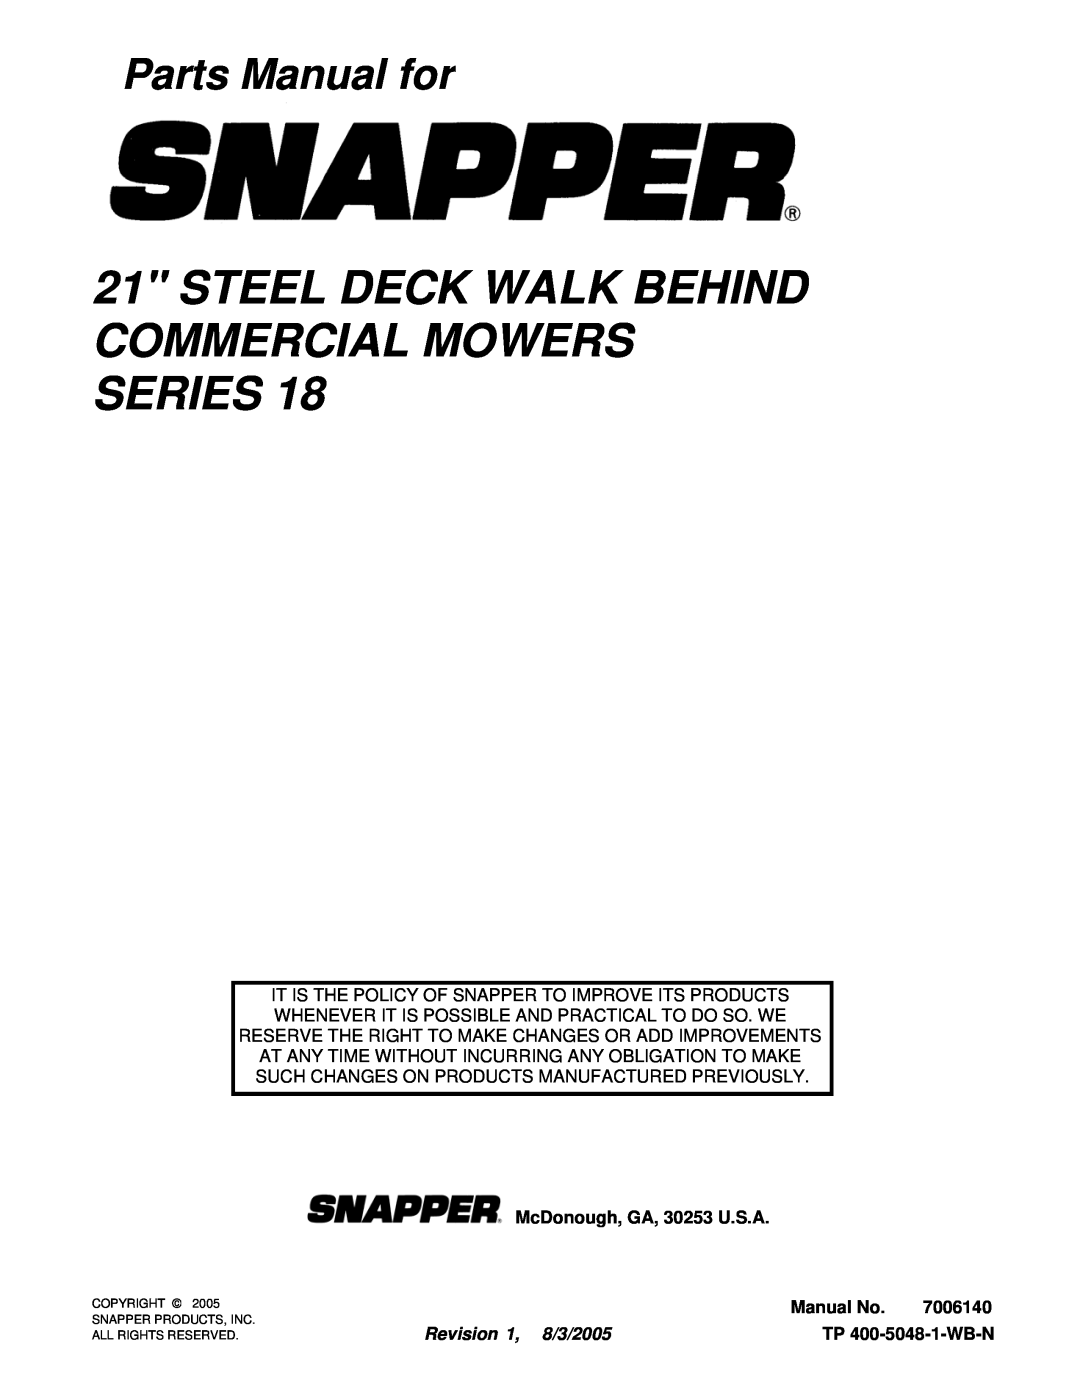 Snapper CP215518HV, CRP216018KWV Parts Manual for, McDonough, GA, 30253 U.S.A, Manual No, 7006140, Revision 1, 8/3/2005 